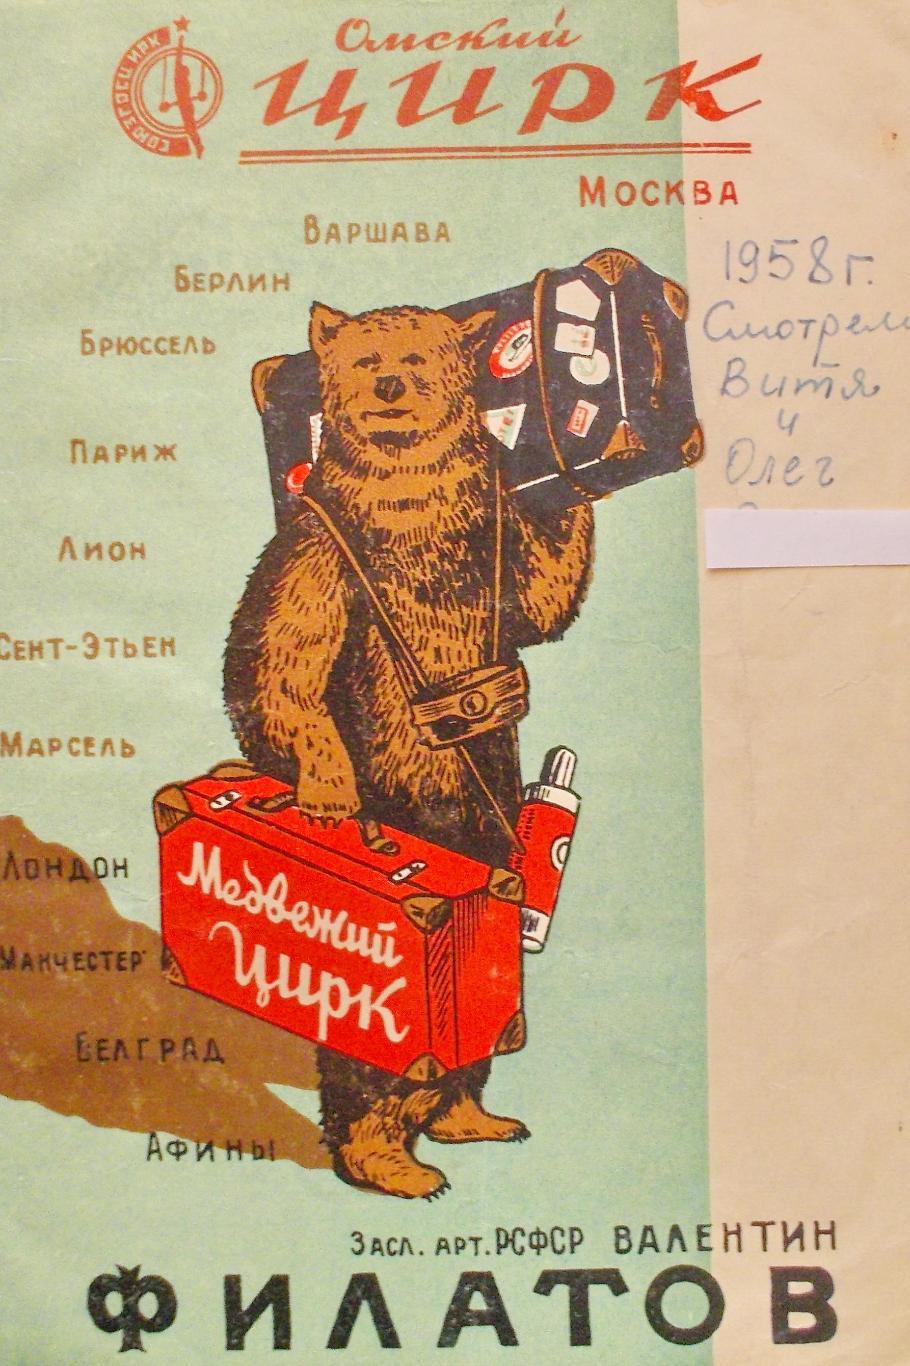 Программа Медвежий цирк Валентина Филатова в Омске. Сезон 1957/58 гг.